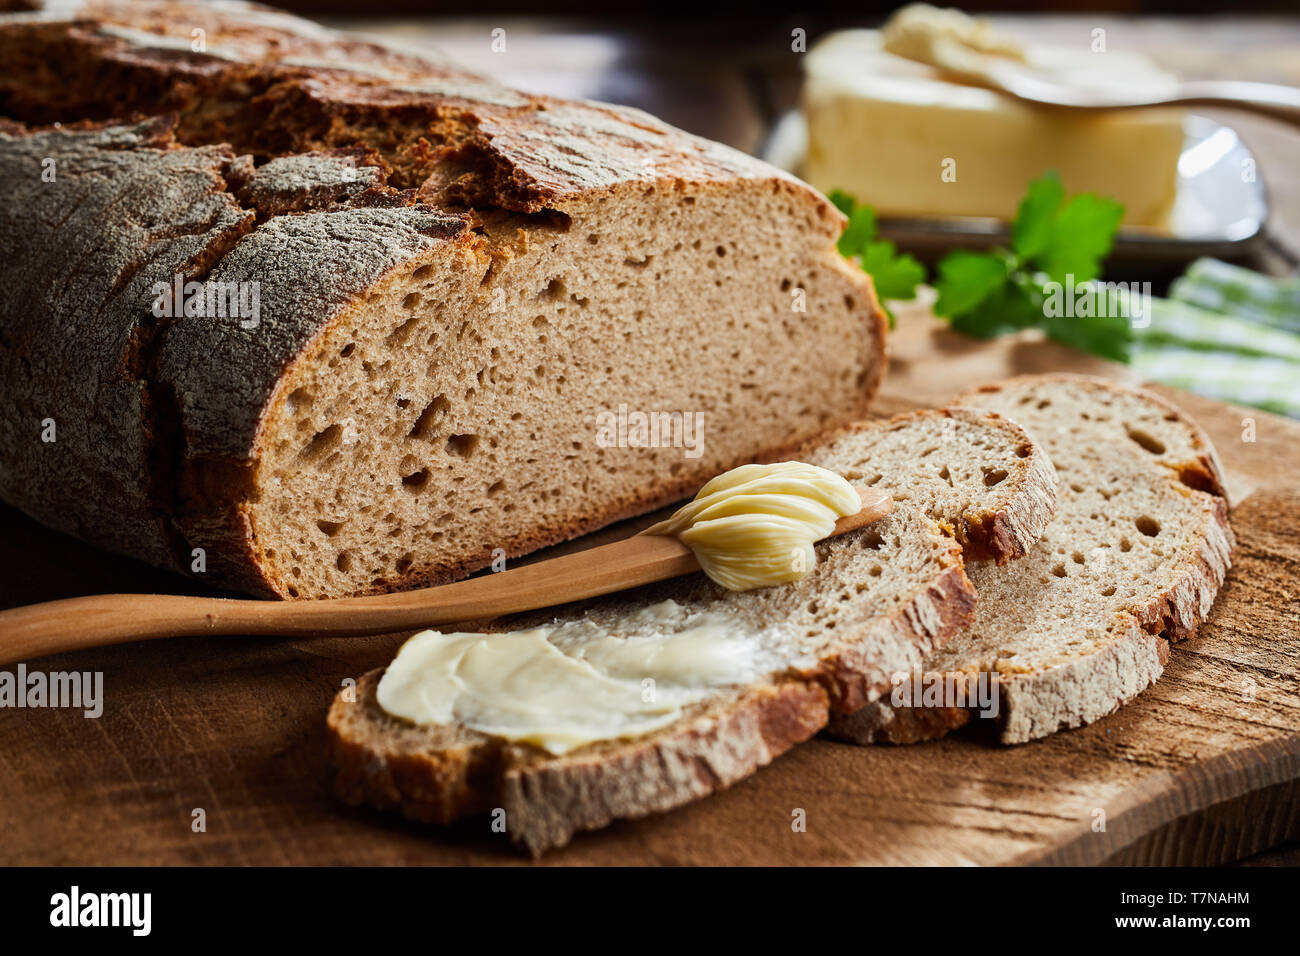 Imburrato fetta di pane di segale con crostini di pane tagliato per mostrare la consistenza del pane in un angolo basso vicino la vista su di un tagliere di legno Foto Stock